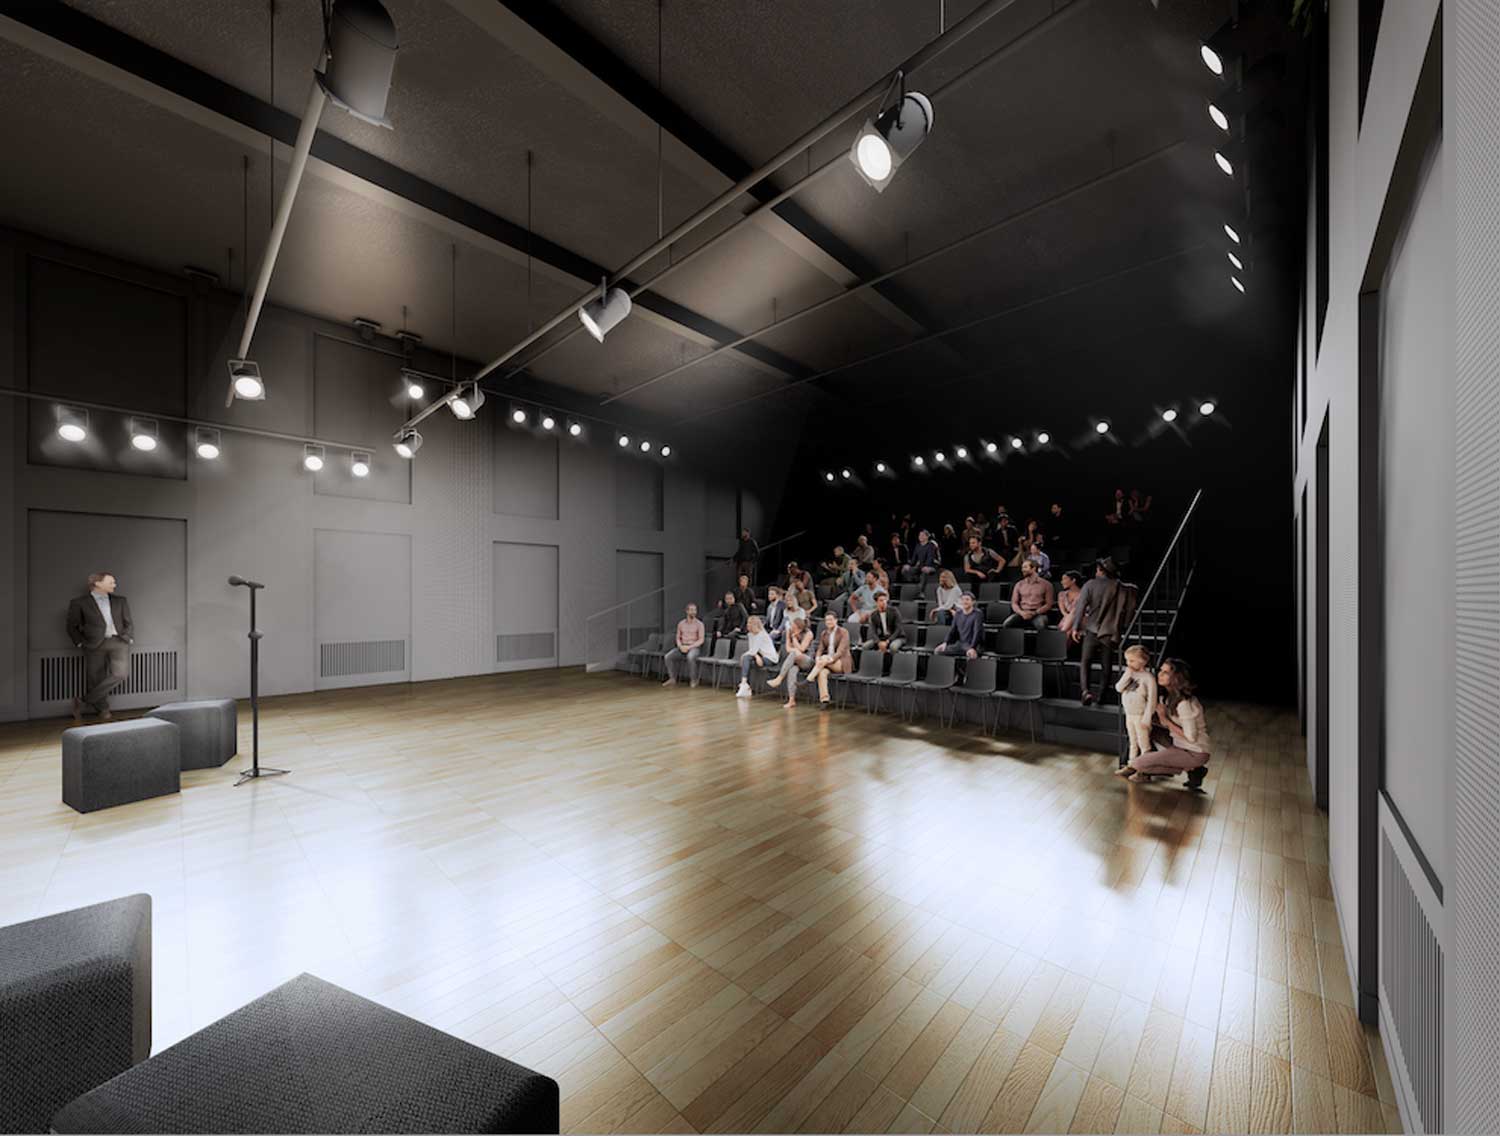 Modellentwurf, farbig, innen: Großer hoher fensterloser Raum mit schwarzen Wänden, schwarzer Decke und Holzfußboden.